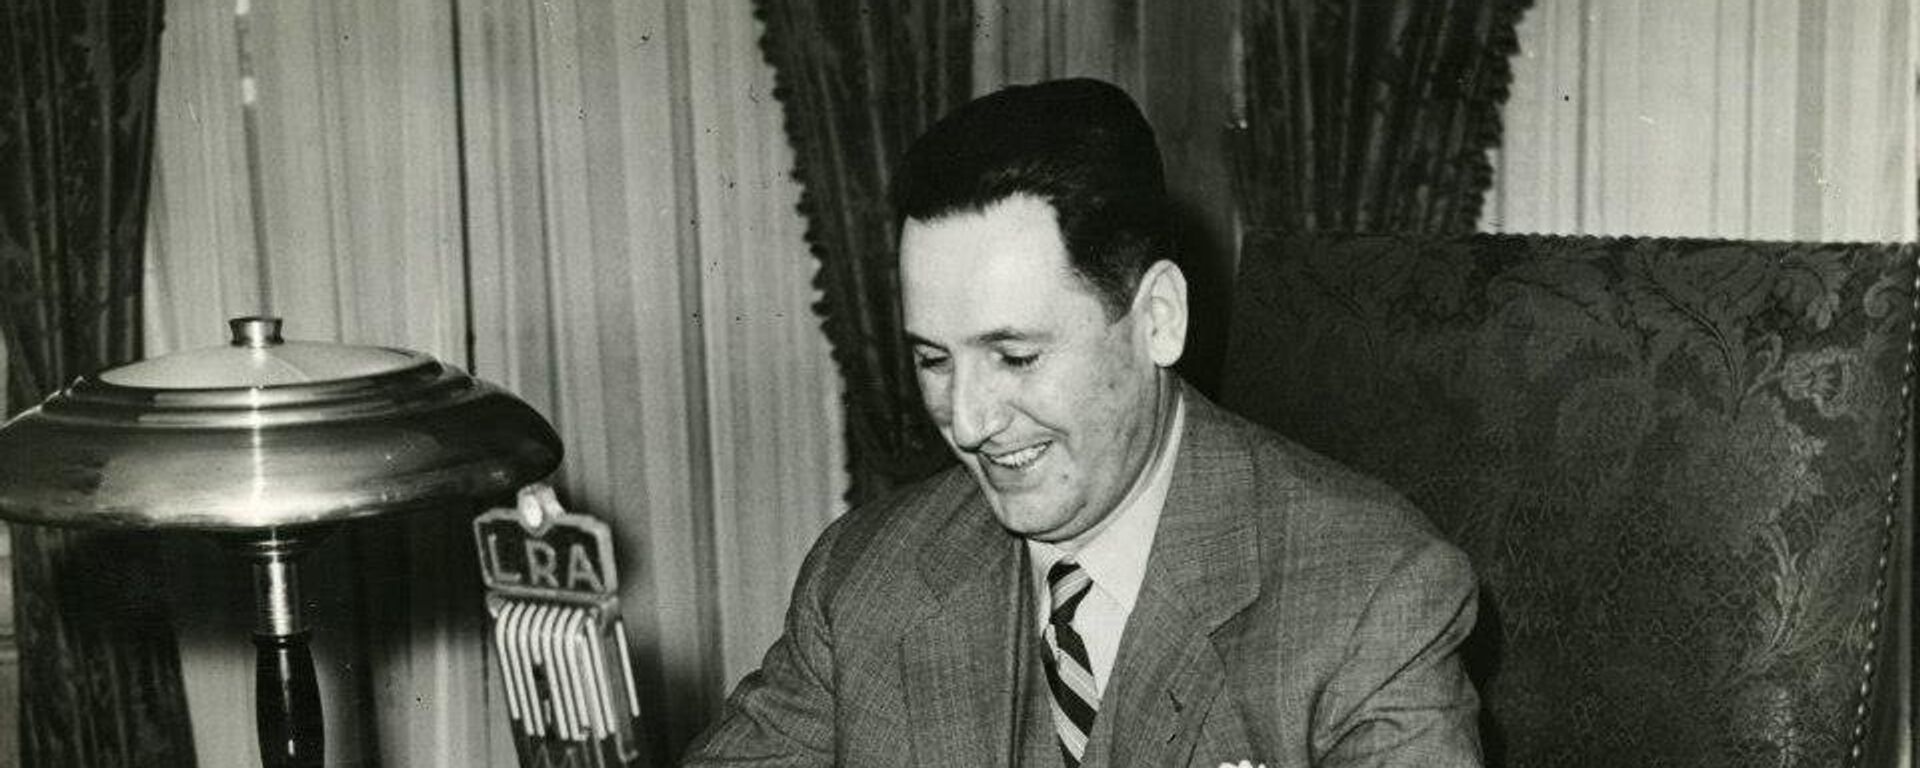 El Presidente Juan Domingo Perón hablando por LRA Radio Nacional - Sputnik Mundo, 1920, 16.10.2020